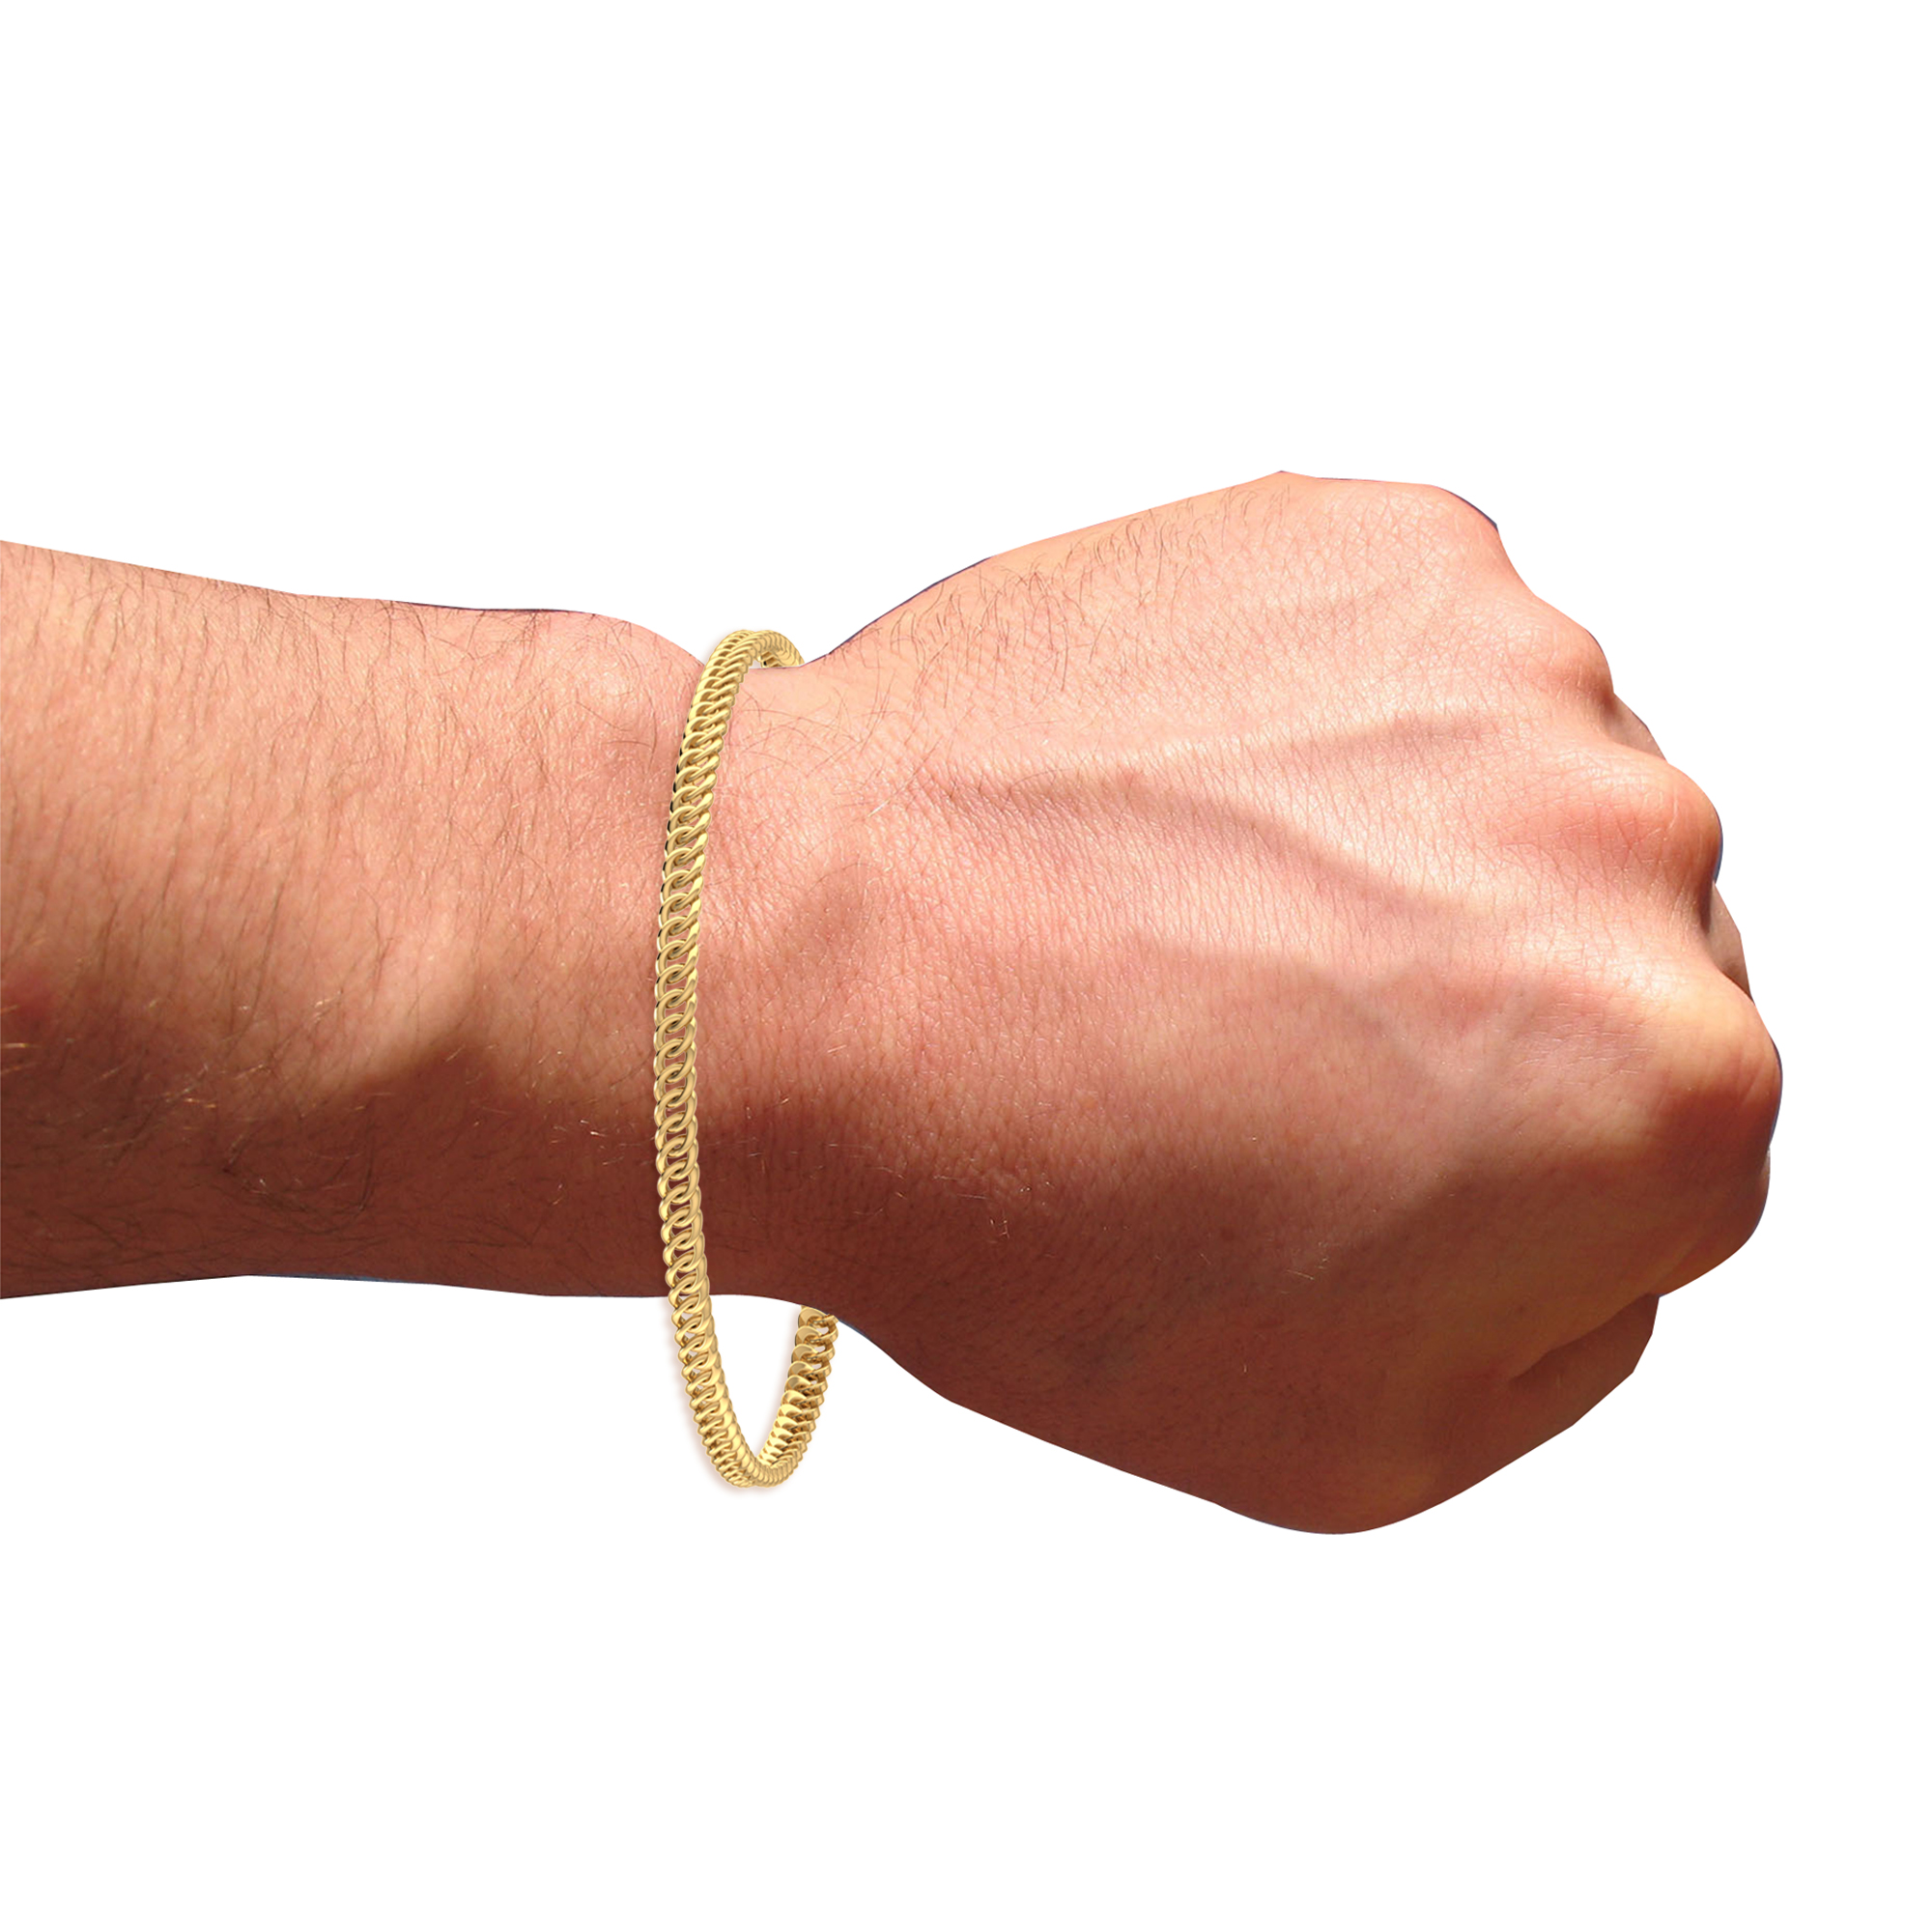 Buy Stylish Modern Mens Gold Bracelet Designs High Quality Antique Color  Bracelet Online